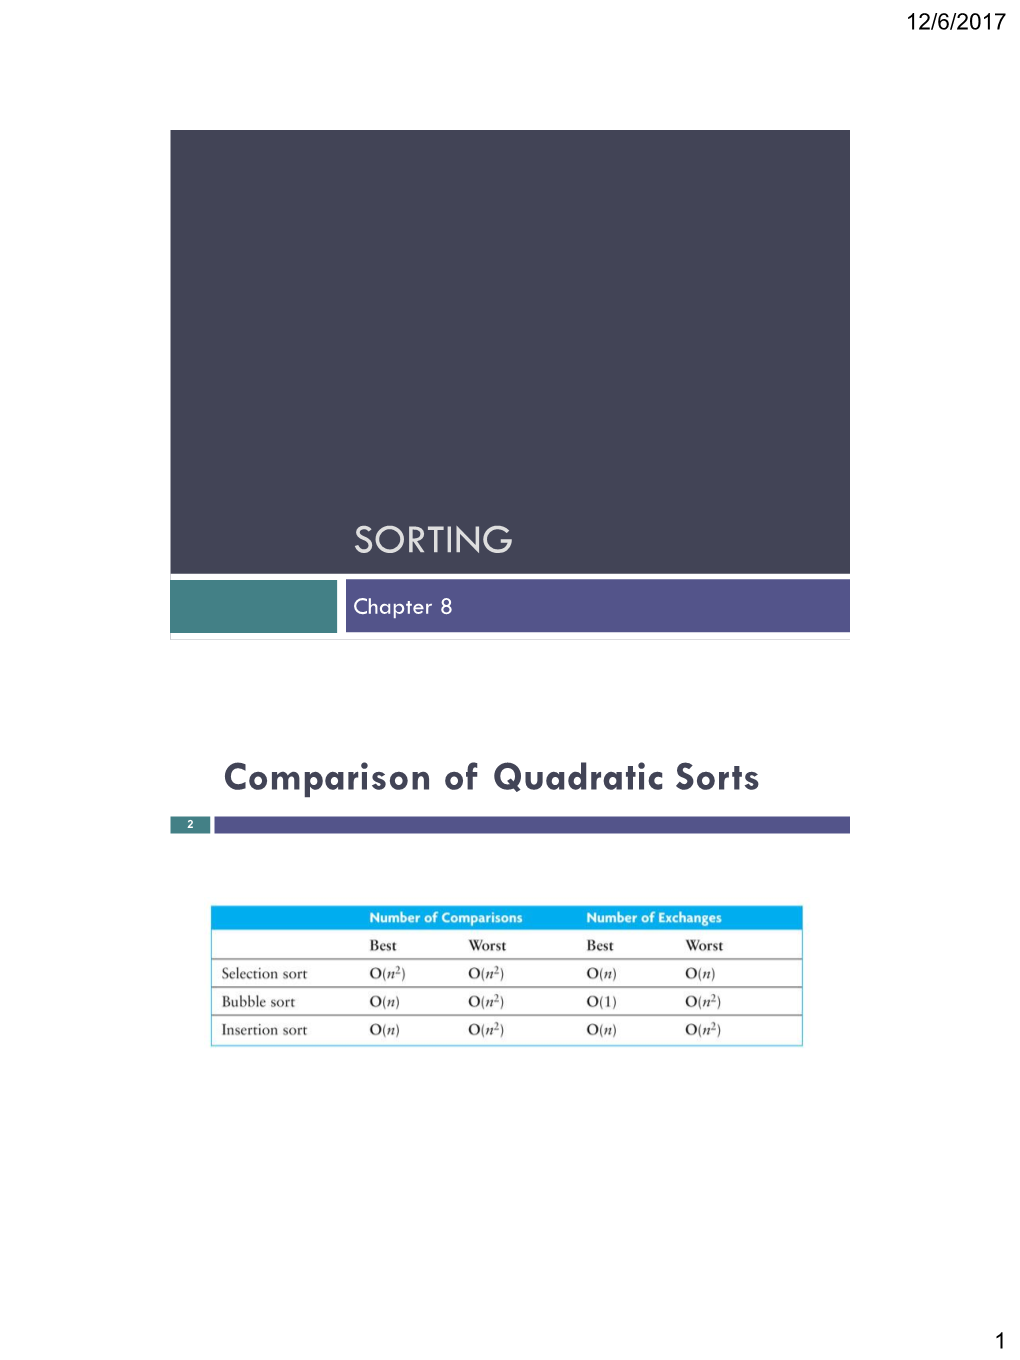 SORTING Comparison of Quadratic Sorts